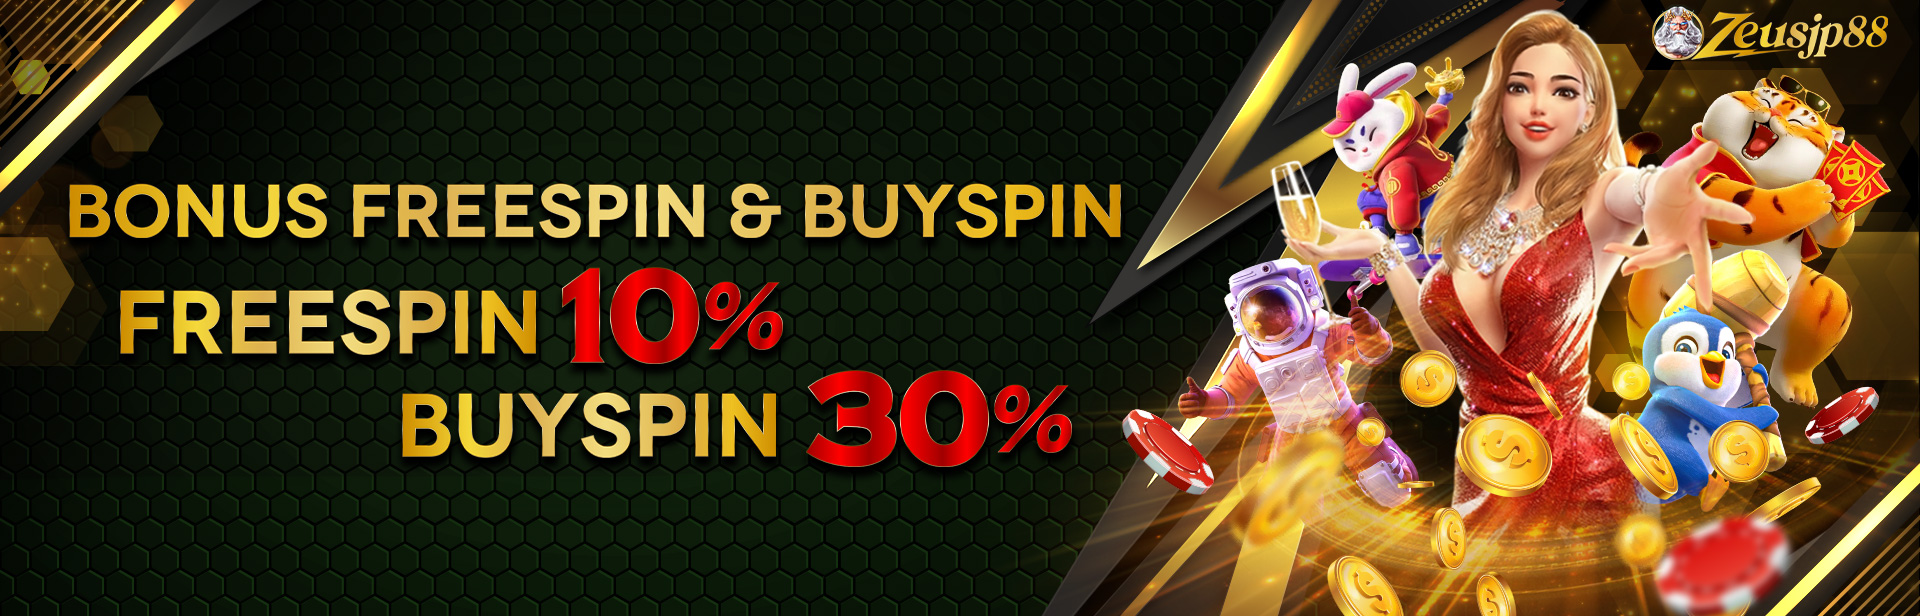 Bonus FreeSpin 10% / Buy FreeSpin 30%